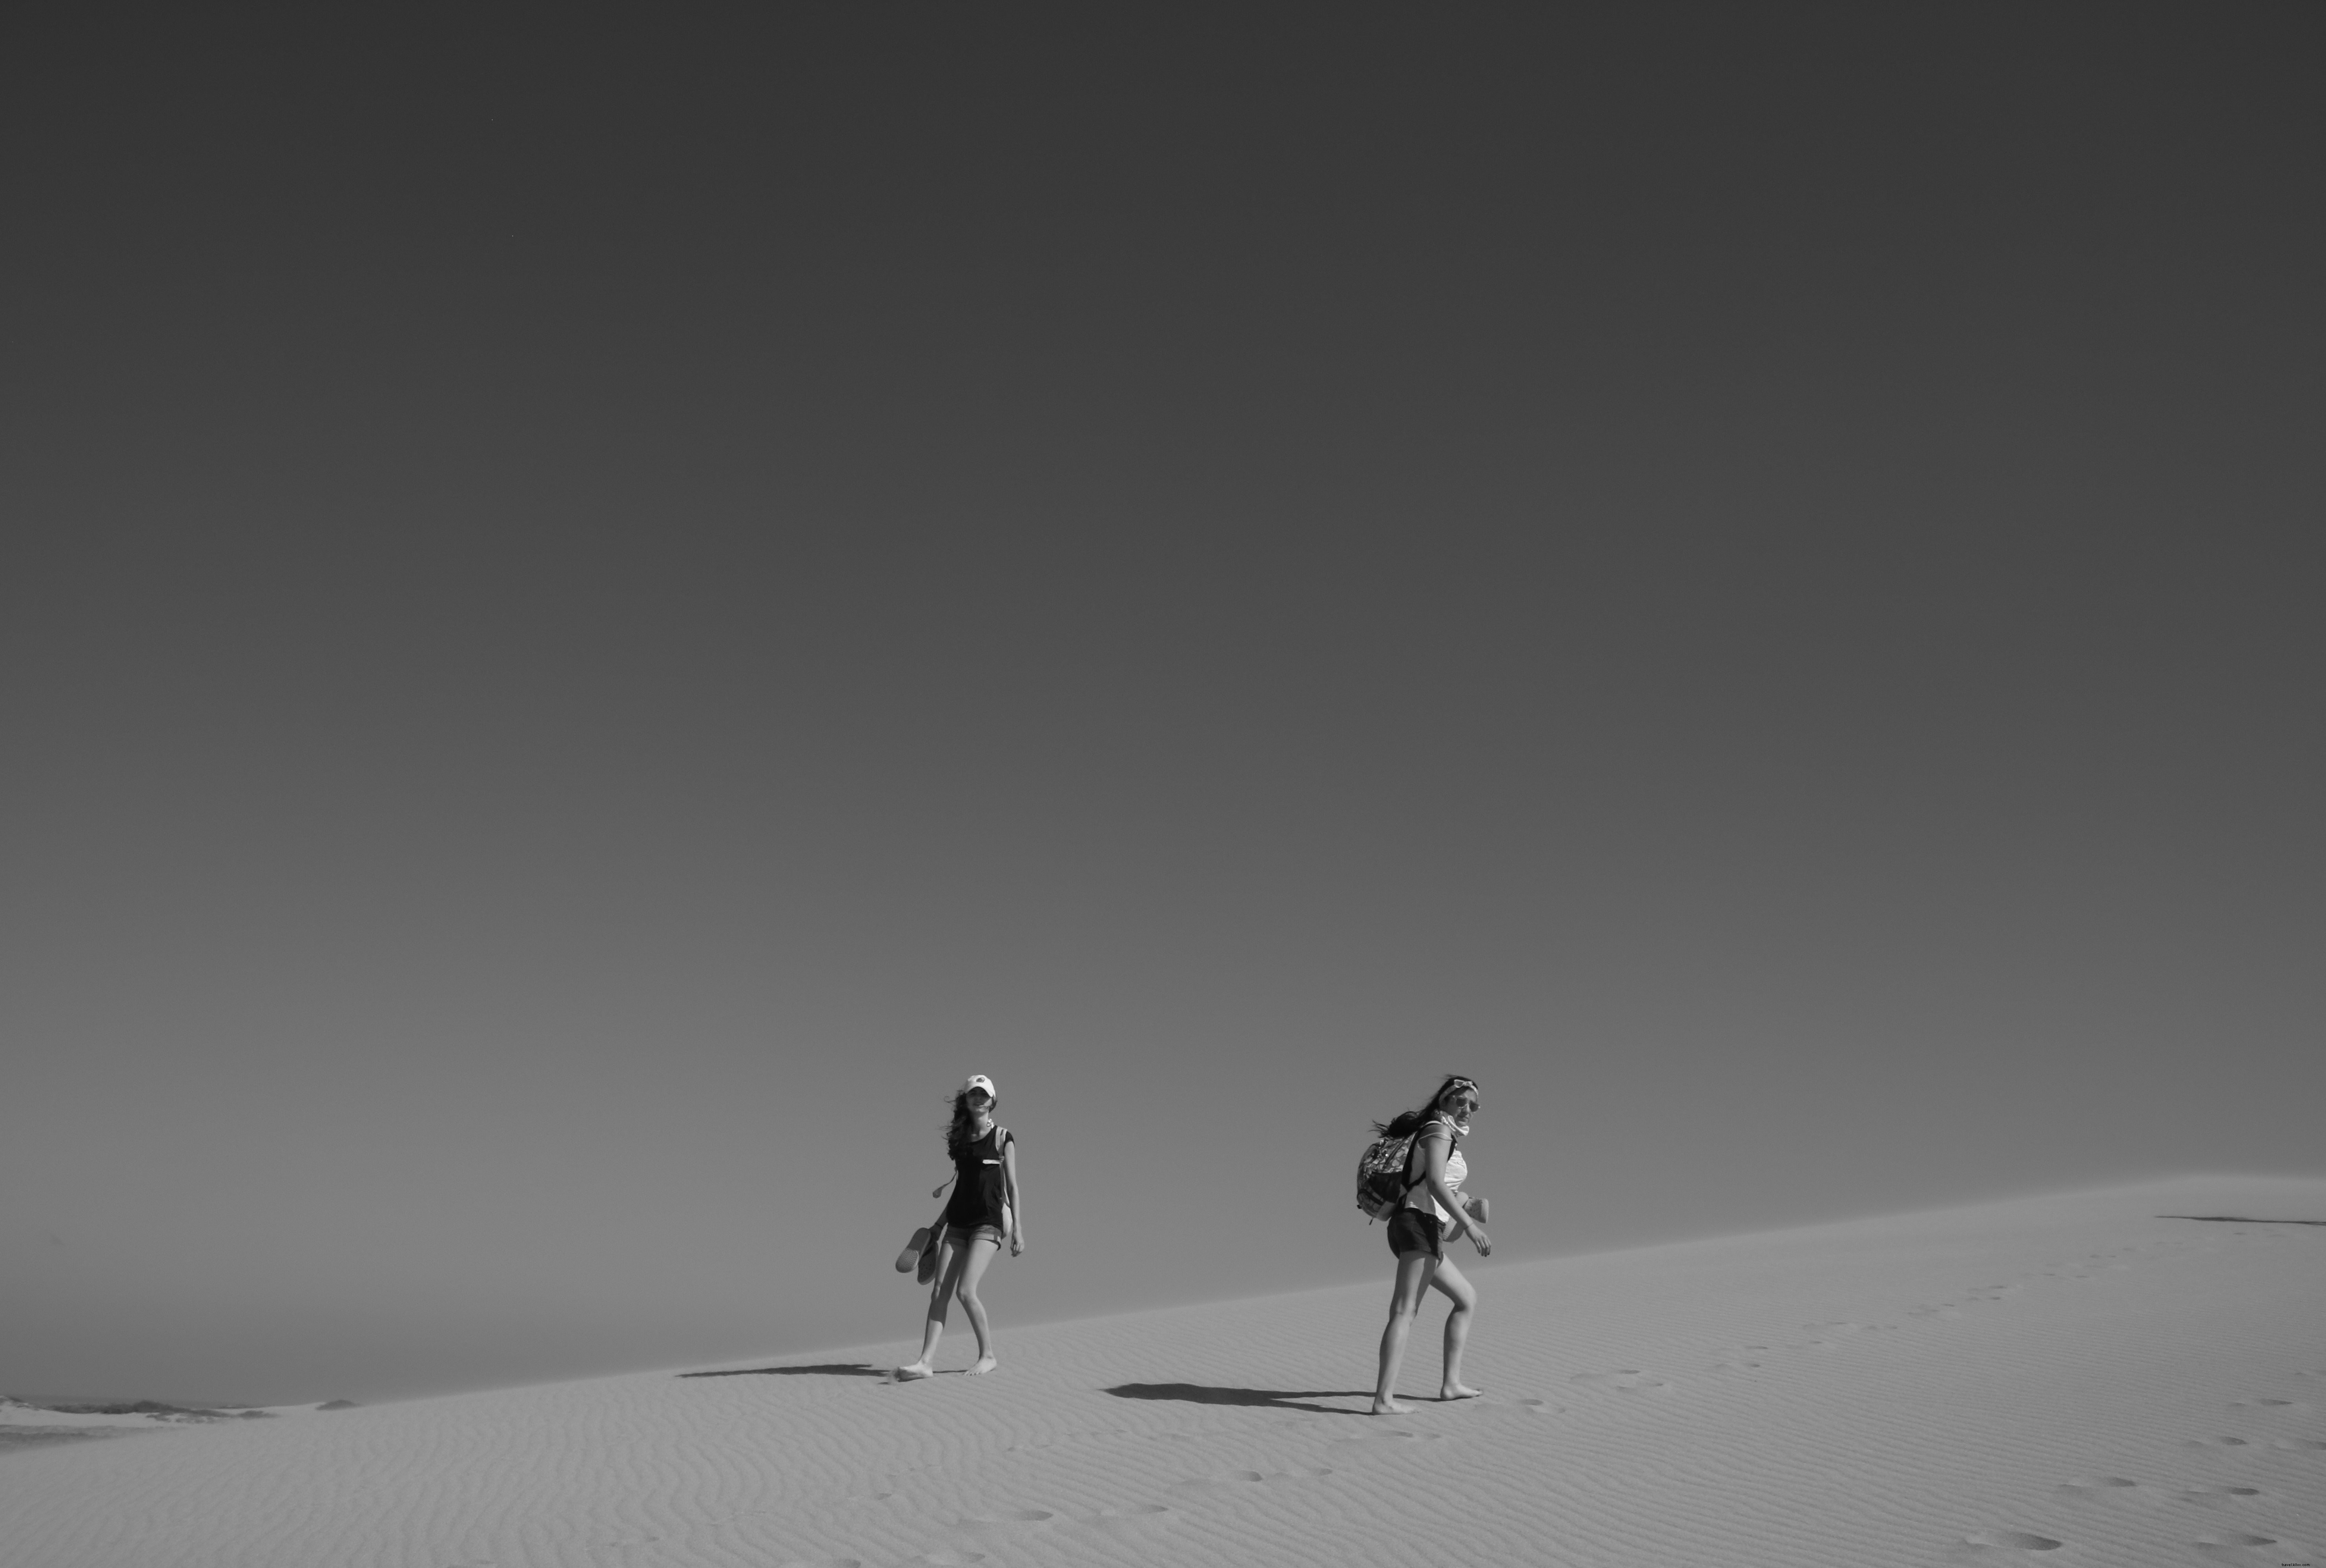 黒と白の写真で砂漠を歩く人々 